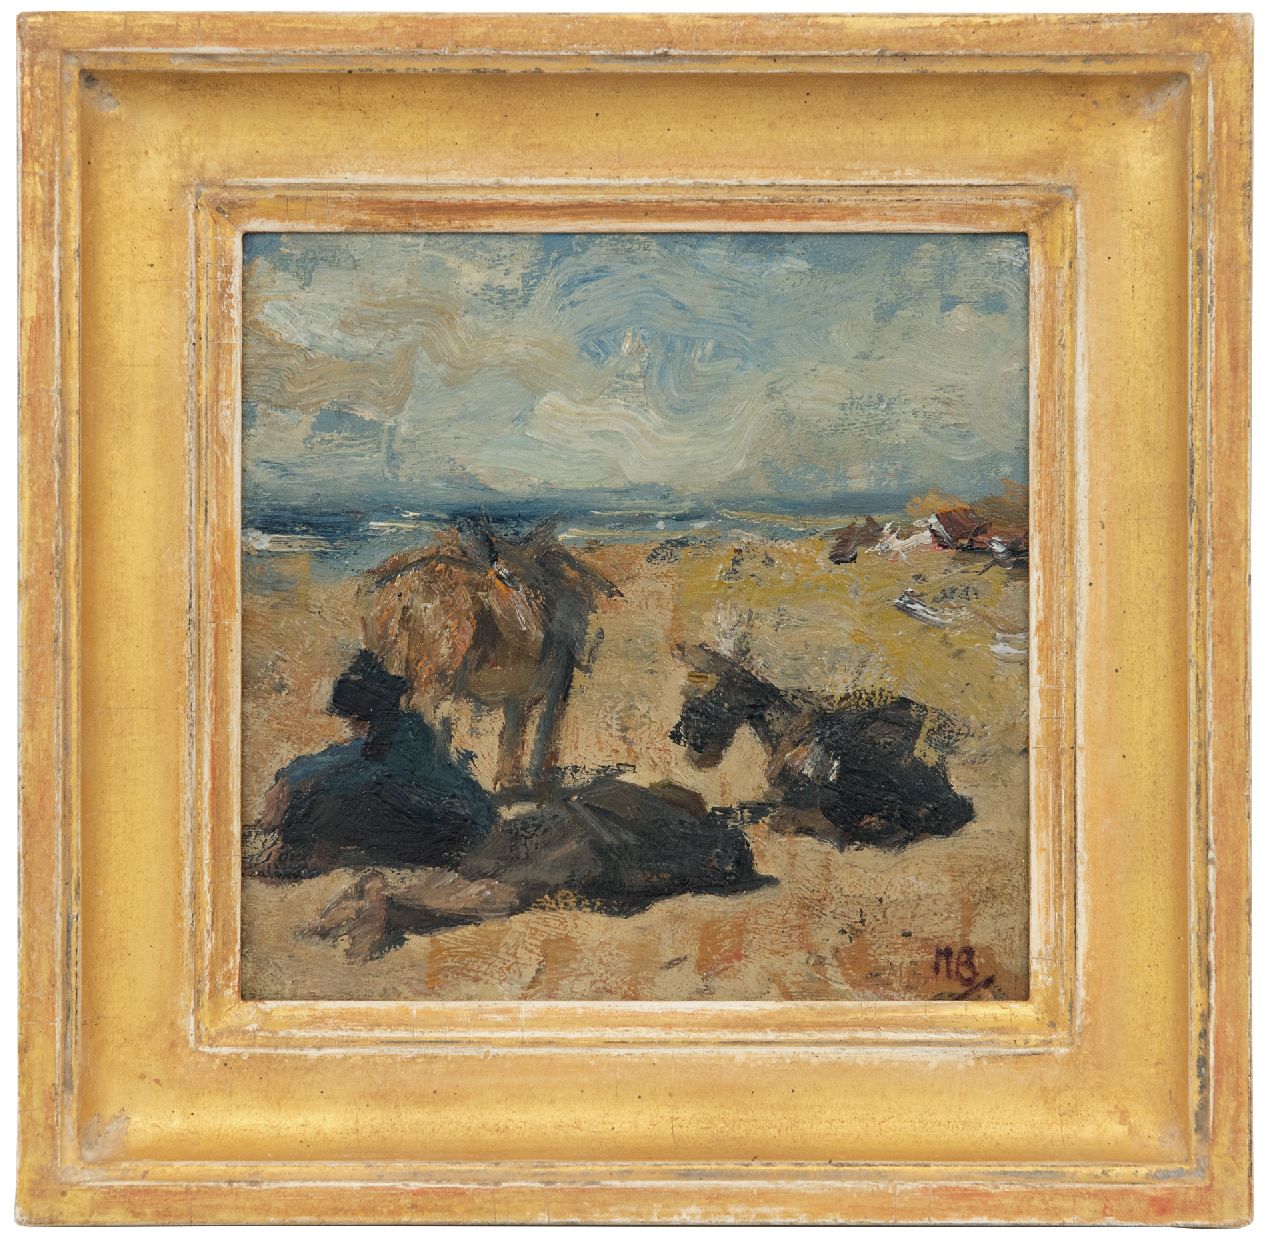 Bauer M.A.J.  | 'Marius' Alexander Jacques Bauer, Rustende ezels en ezeldrijver op het strand, olieverf op paneel 18,5 x 18,6 cm, gesigneerd rechtsonder met initialen